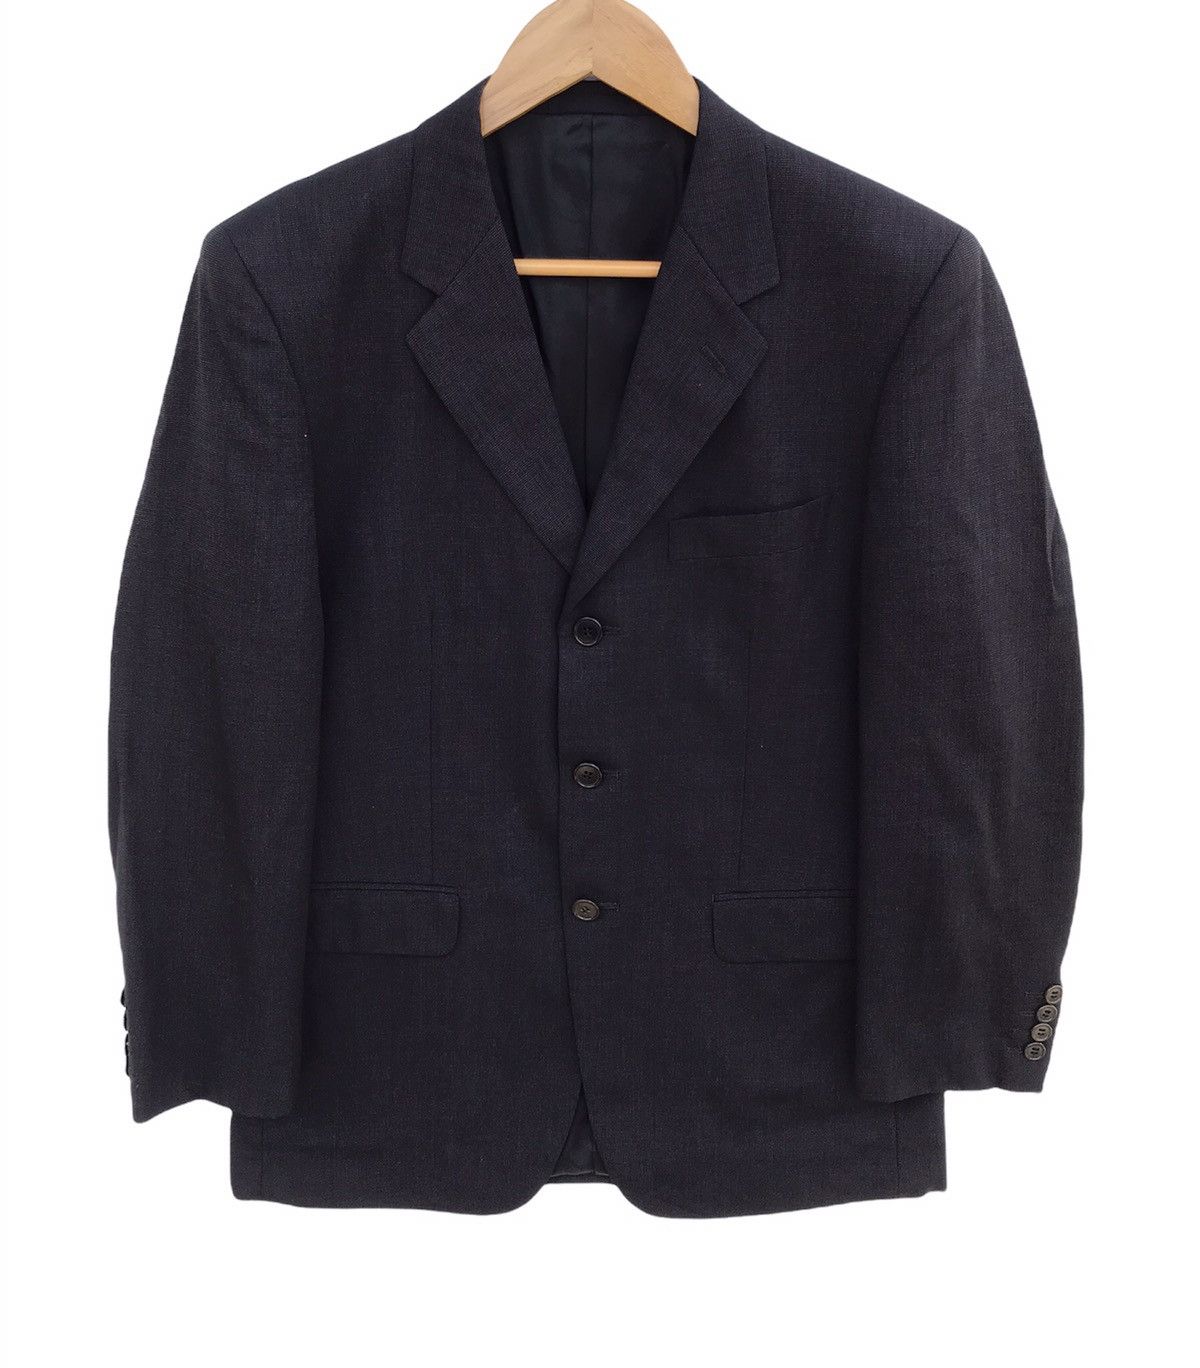 Paul smith Suit Jacket - 1